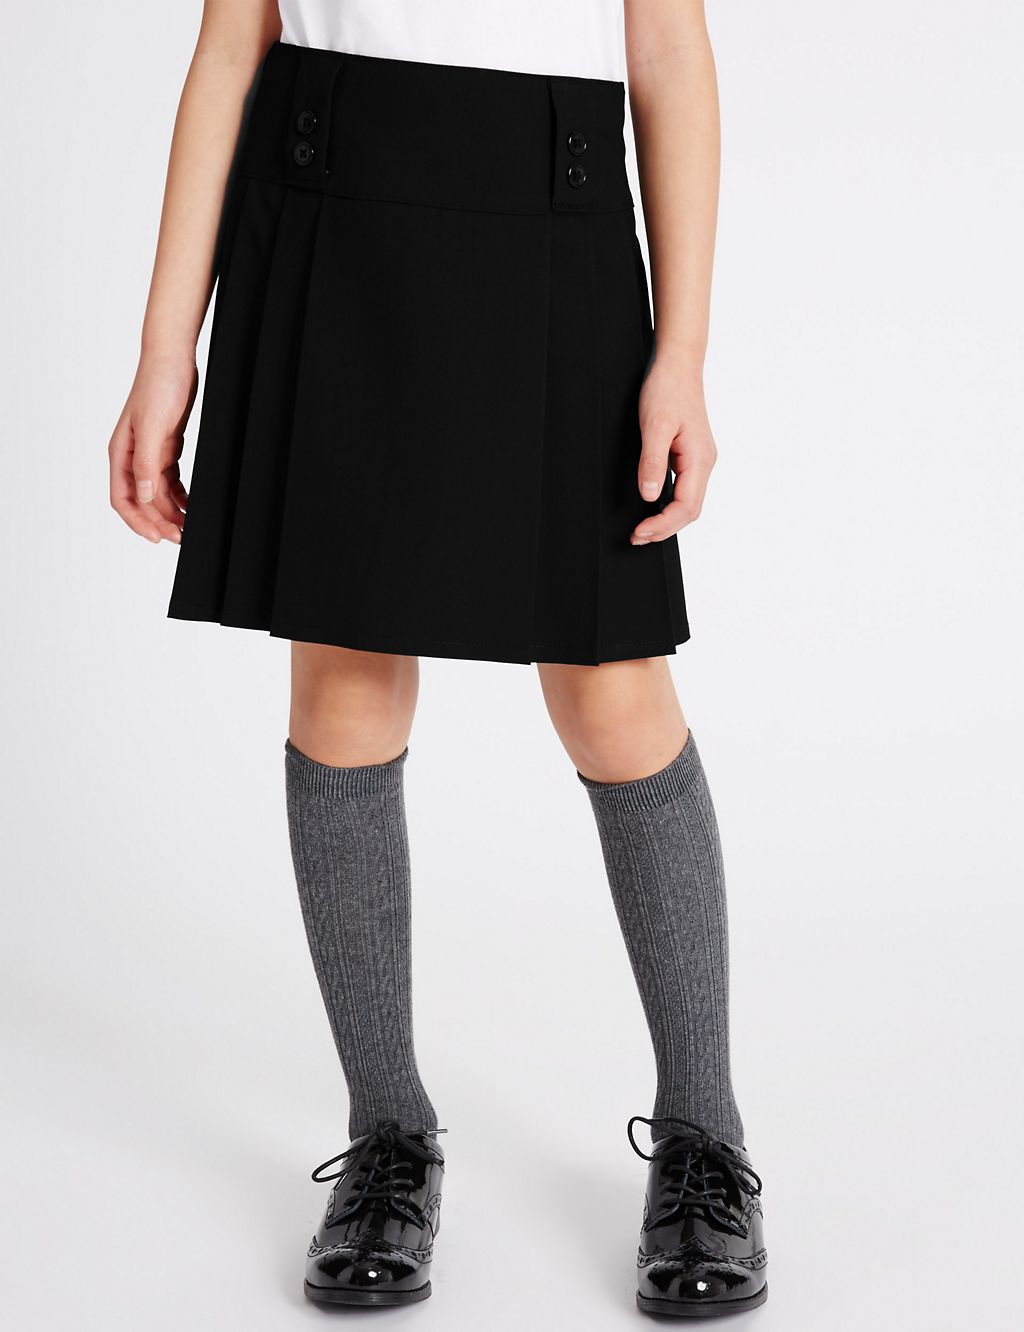 Senior Girls' Pleated Skirt 2 of 7